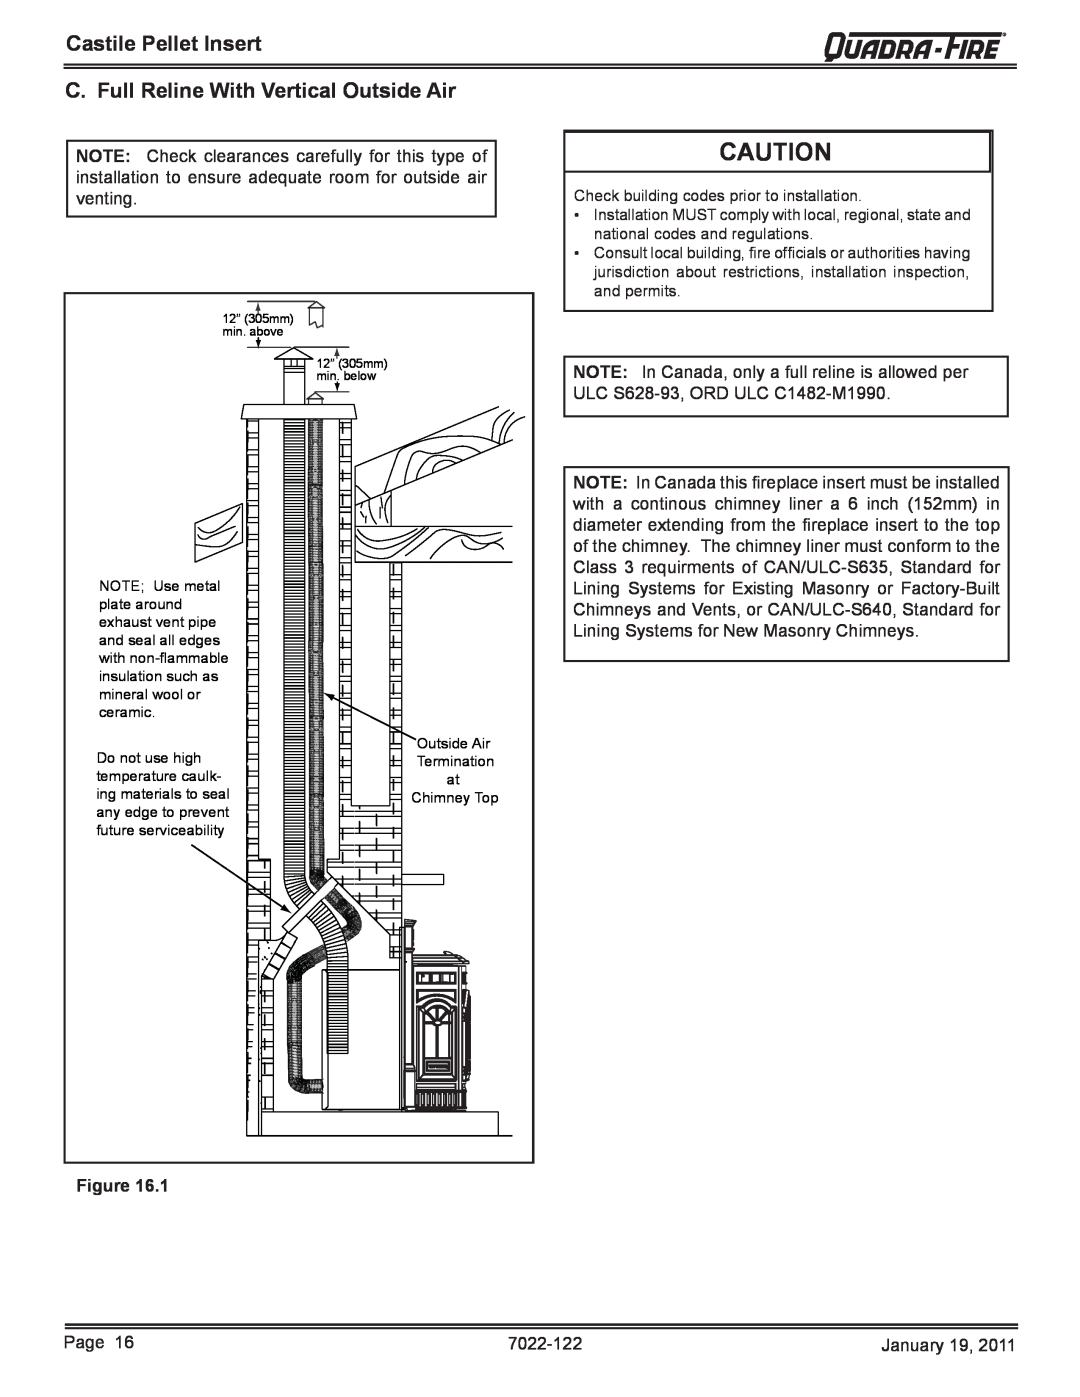 Quadra-Fire CASTILEI-MBK owner manual C. Full Reline With Vertical Outside Air, Castile Pellet Insert 